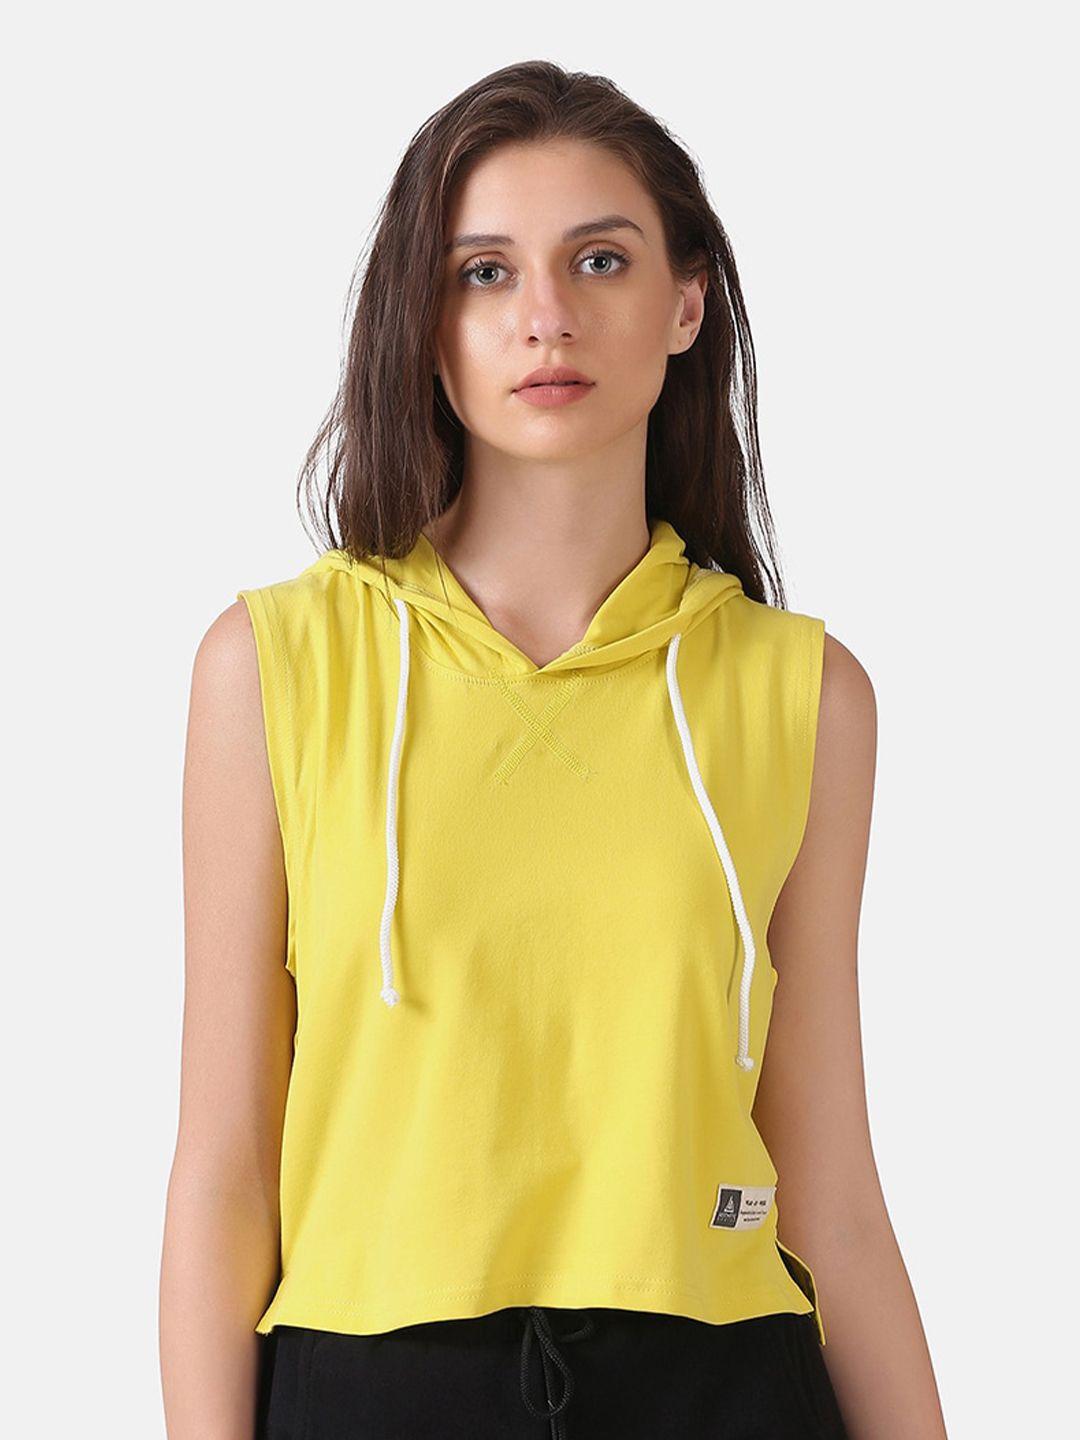 aesthetic-bodies-women-yellow-hooded-sweatshirt